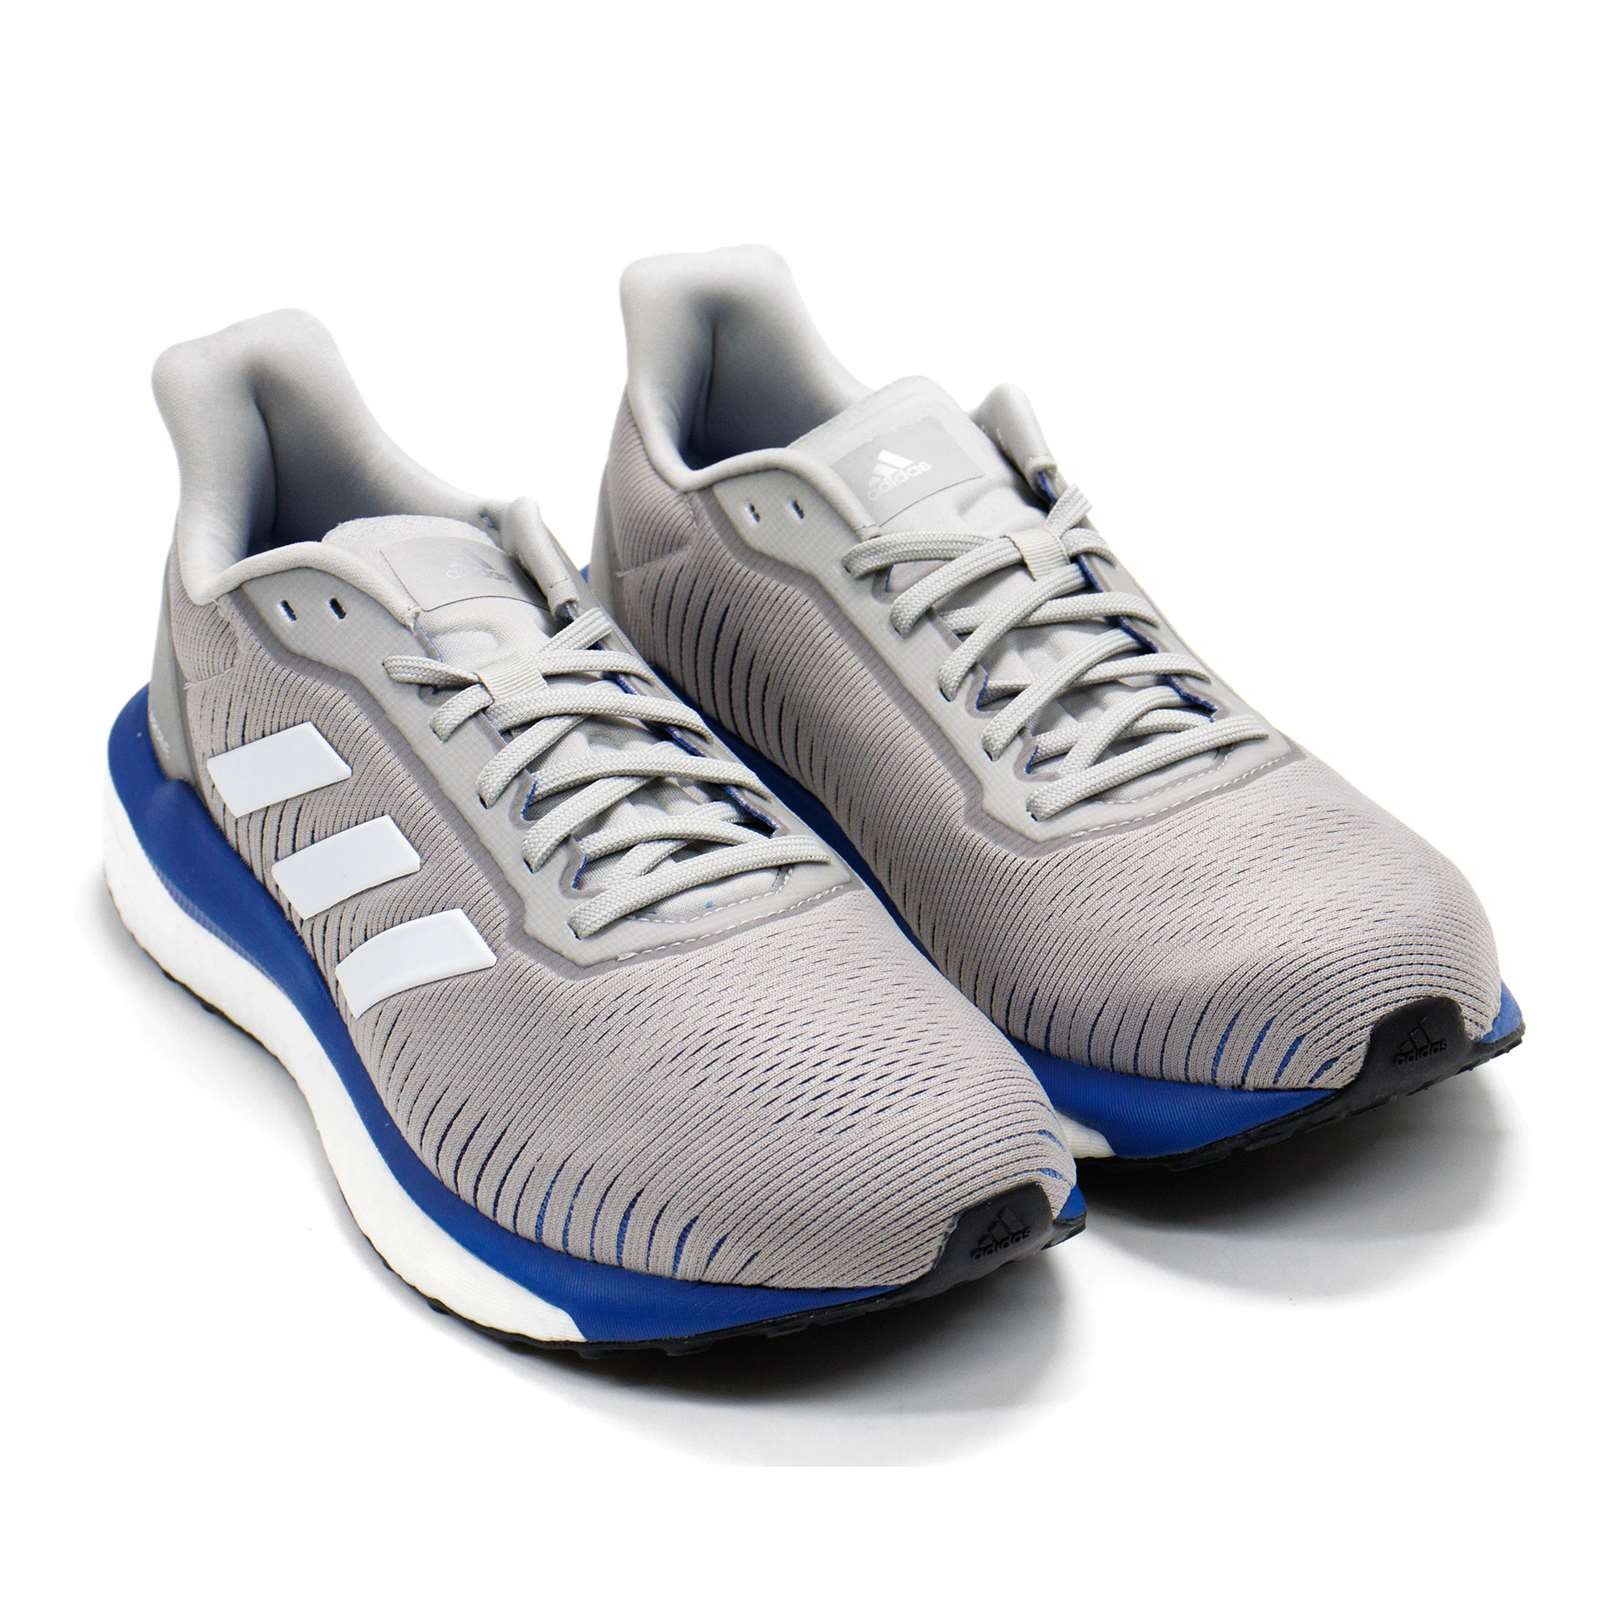 Confirmación escritura Oriental Adidas Men Solar Drive 19 Running Shoes